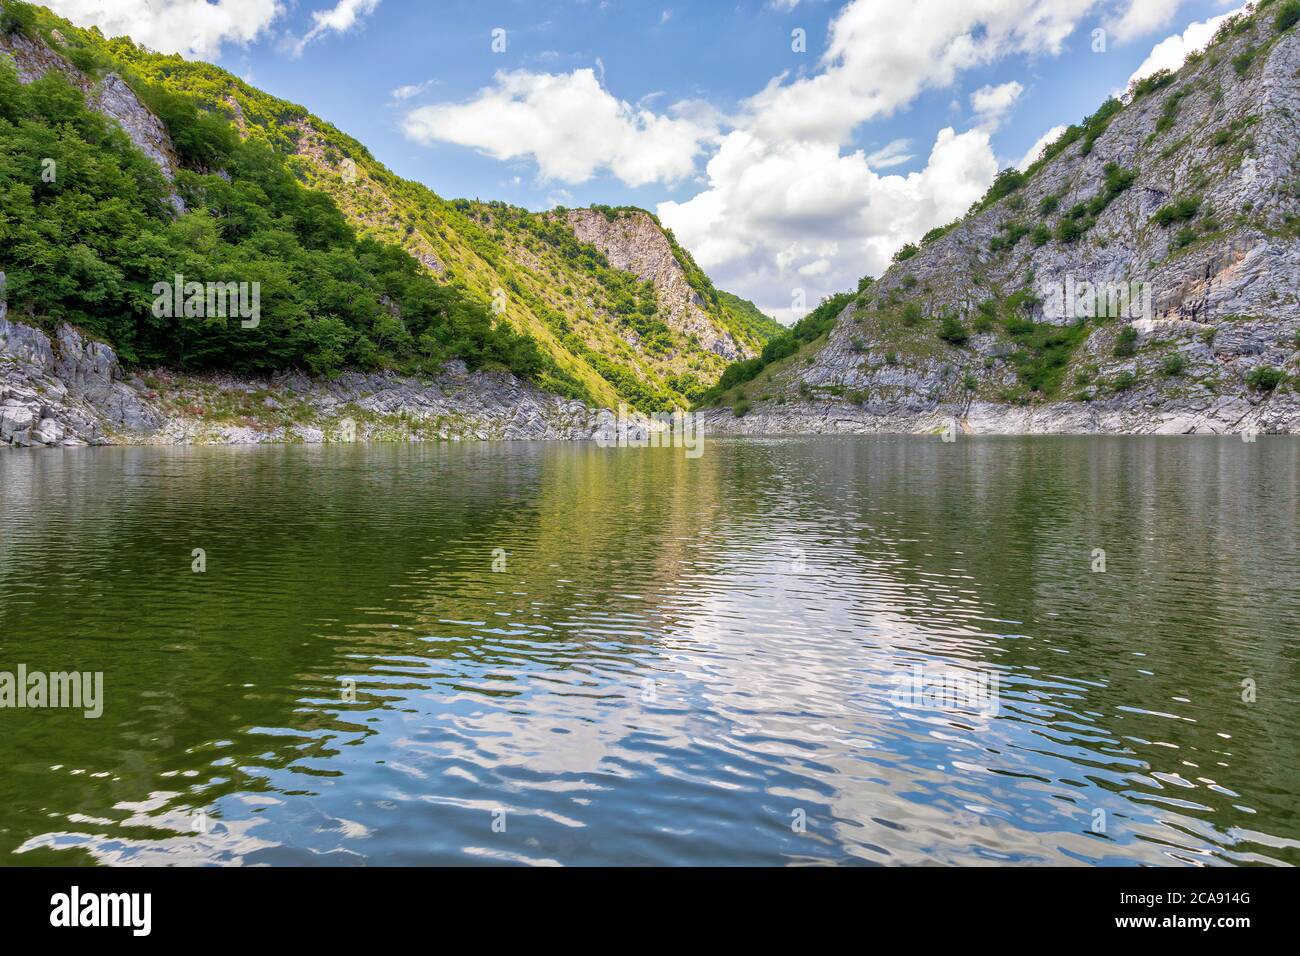 Uvac fiume canyon meandri. Riserva naturale speciale, meta turistica popolare nella Serbia sudoccidentale. Foto Stock